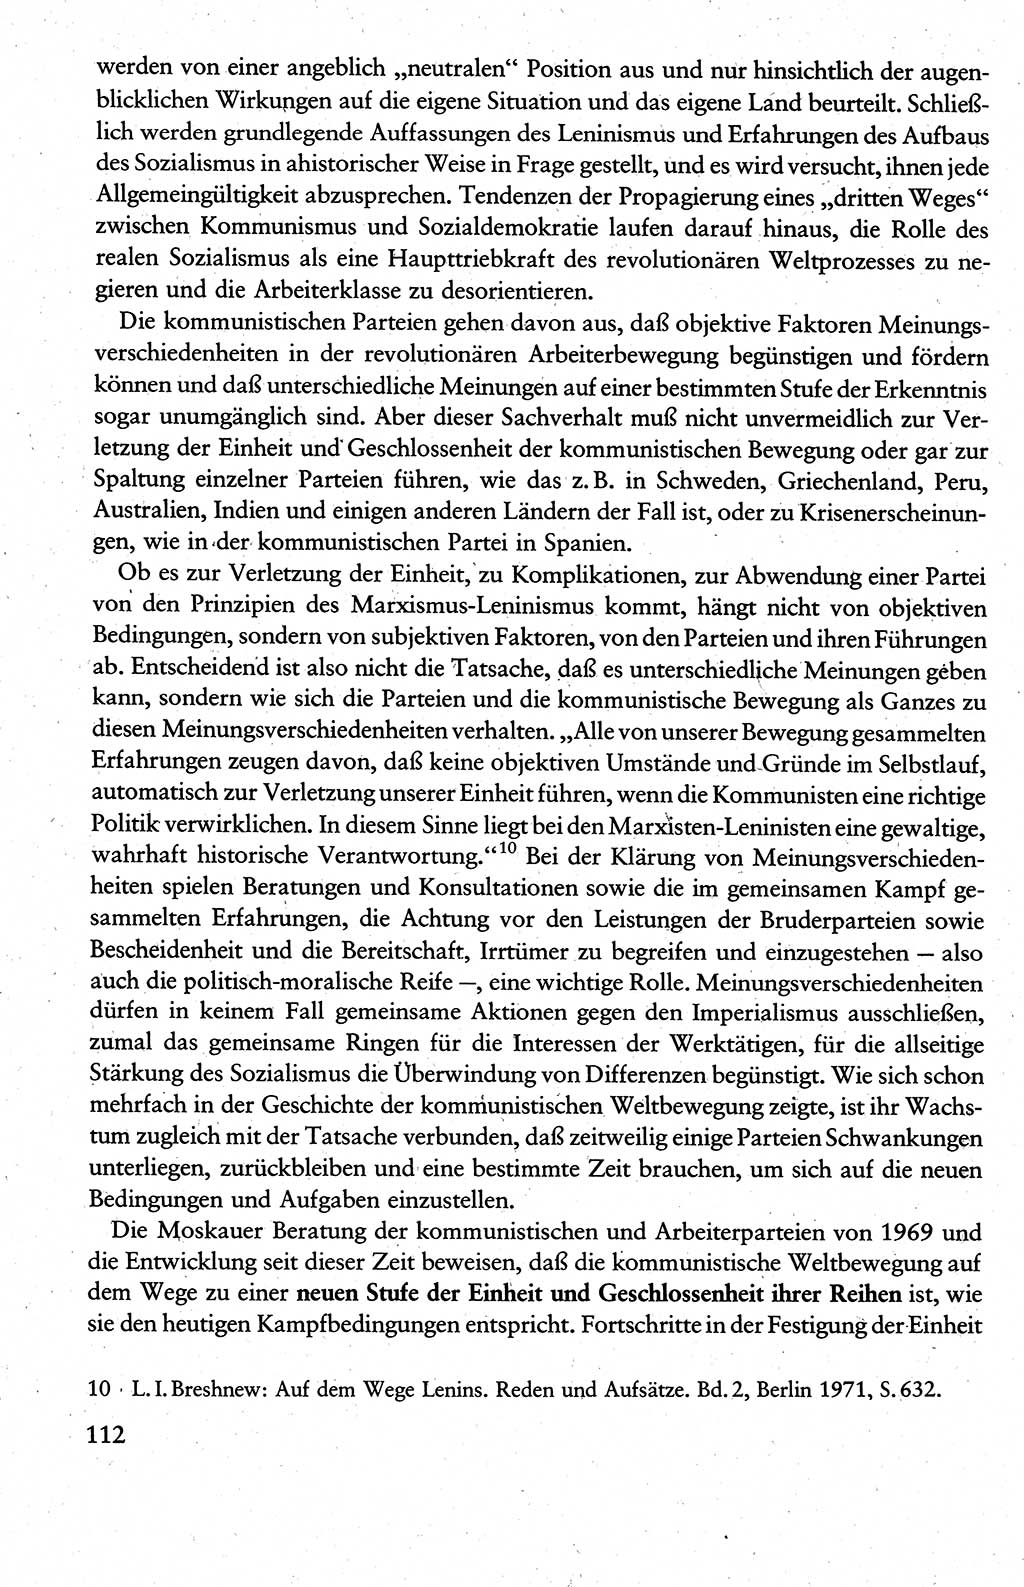 Wissenschaftlicher Kommunismus [Deutsche Demokratische Republik (DDR)], Lehrbuch für das marxistisch-leninistische Grundlagenstudium 1983, Seite 112 (Wiss. Komm. DDR Lb. 1983, S. 112)